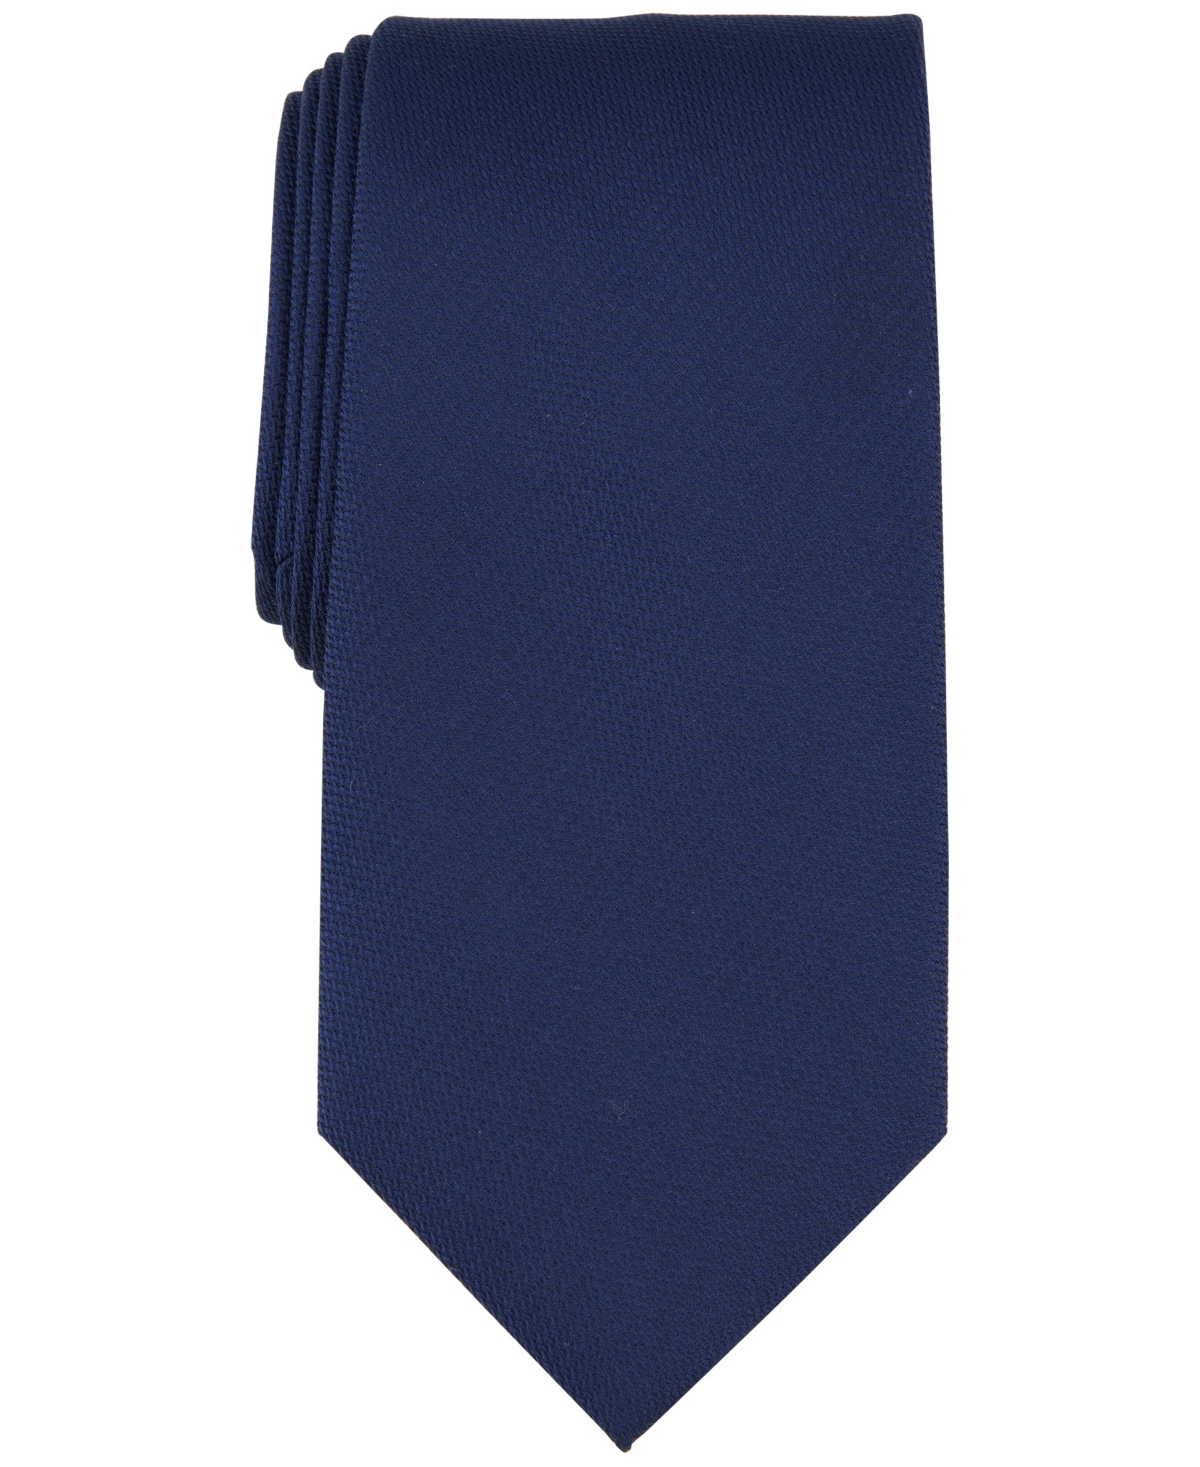 Michael Kors Men's Royal Solid Tie In Navy